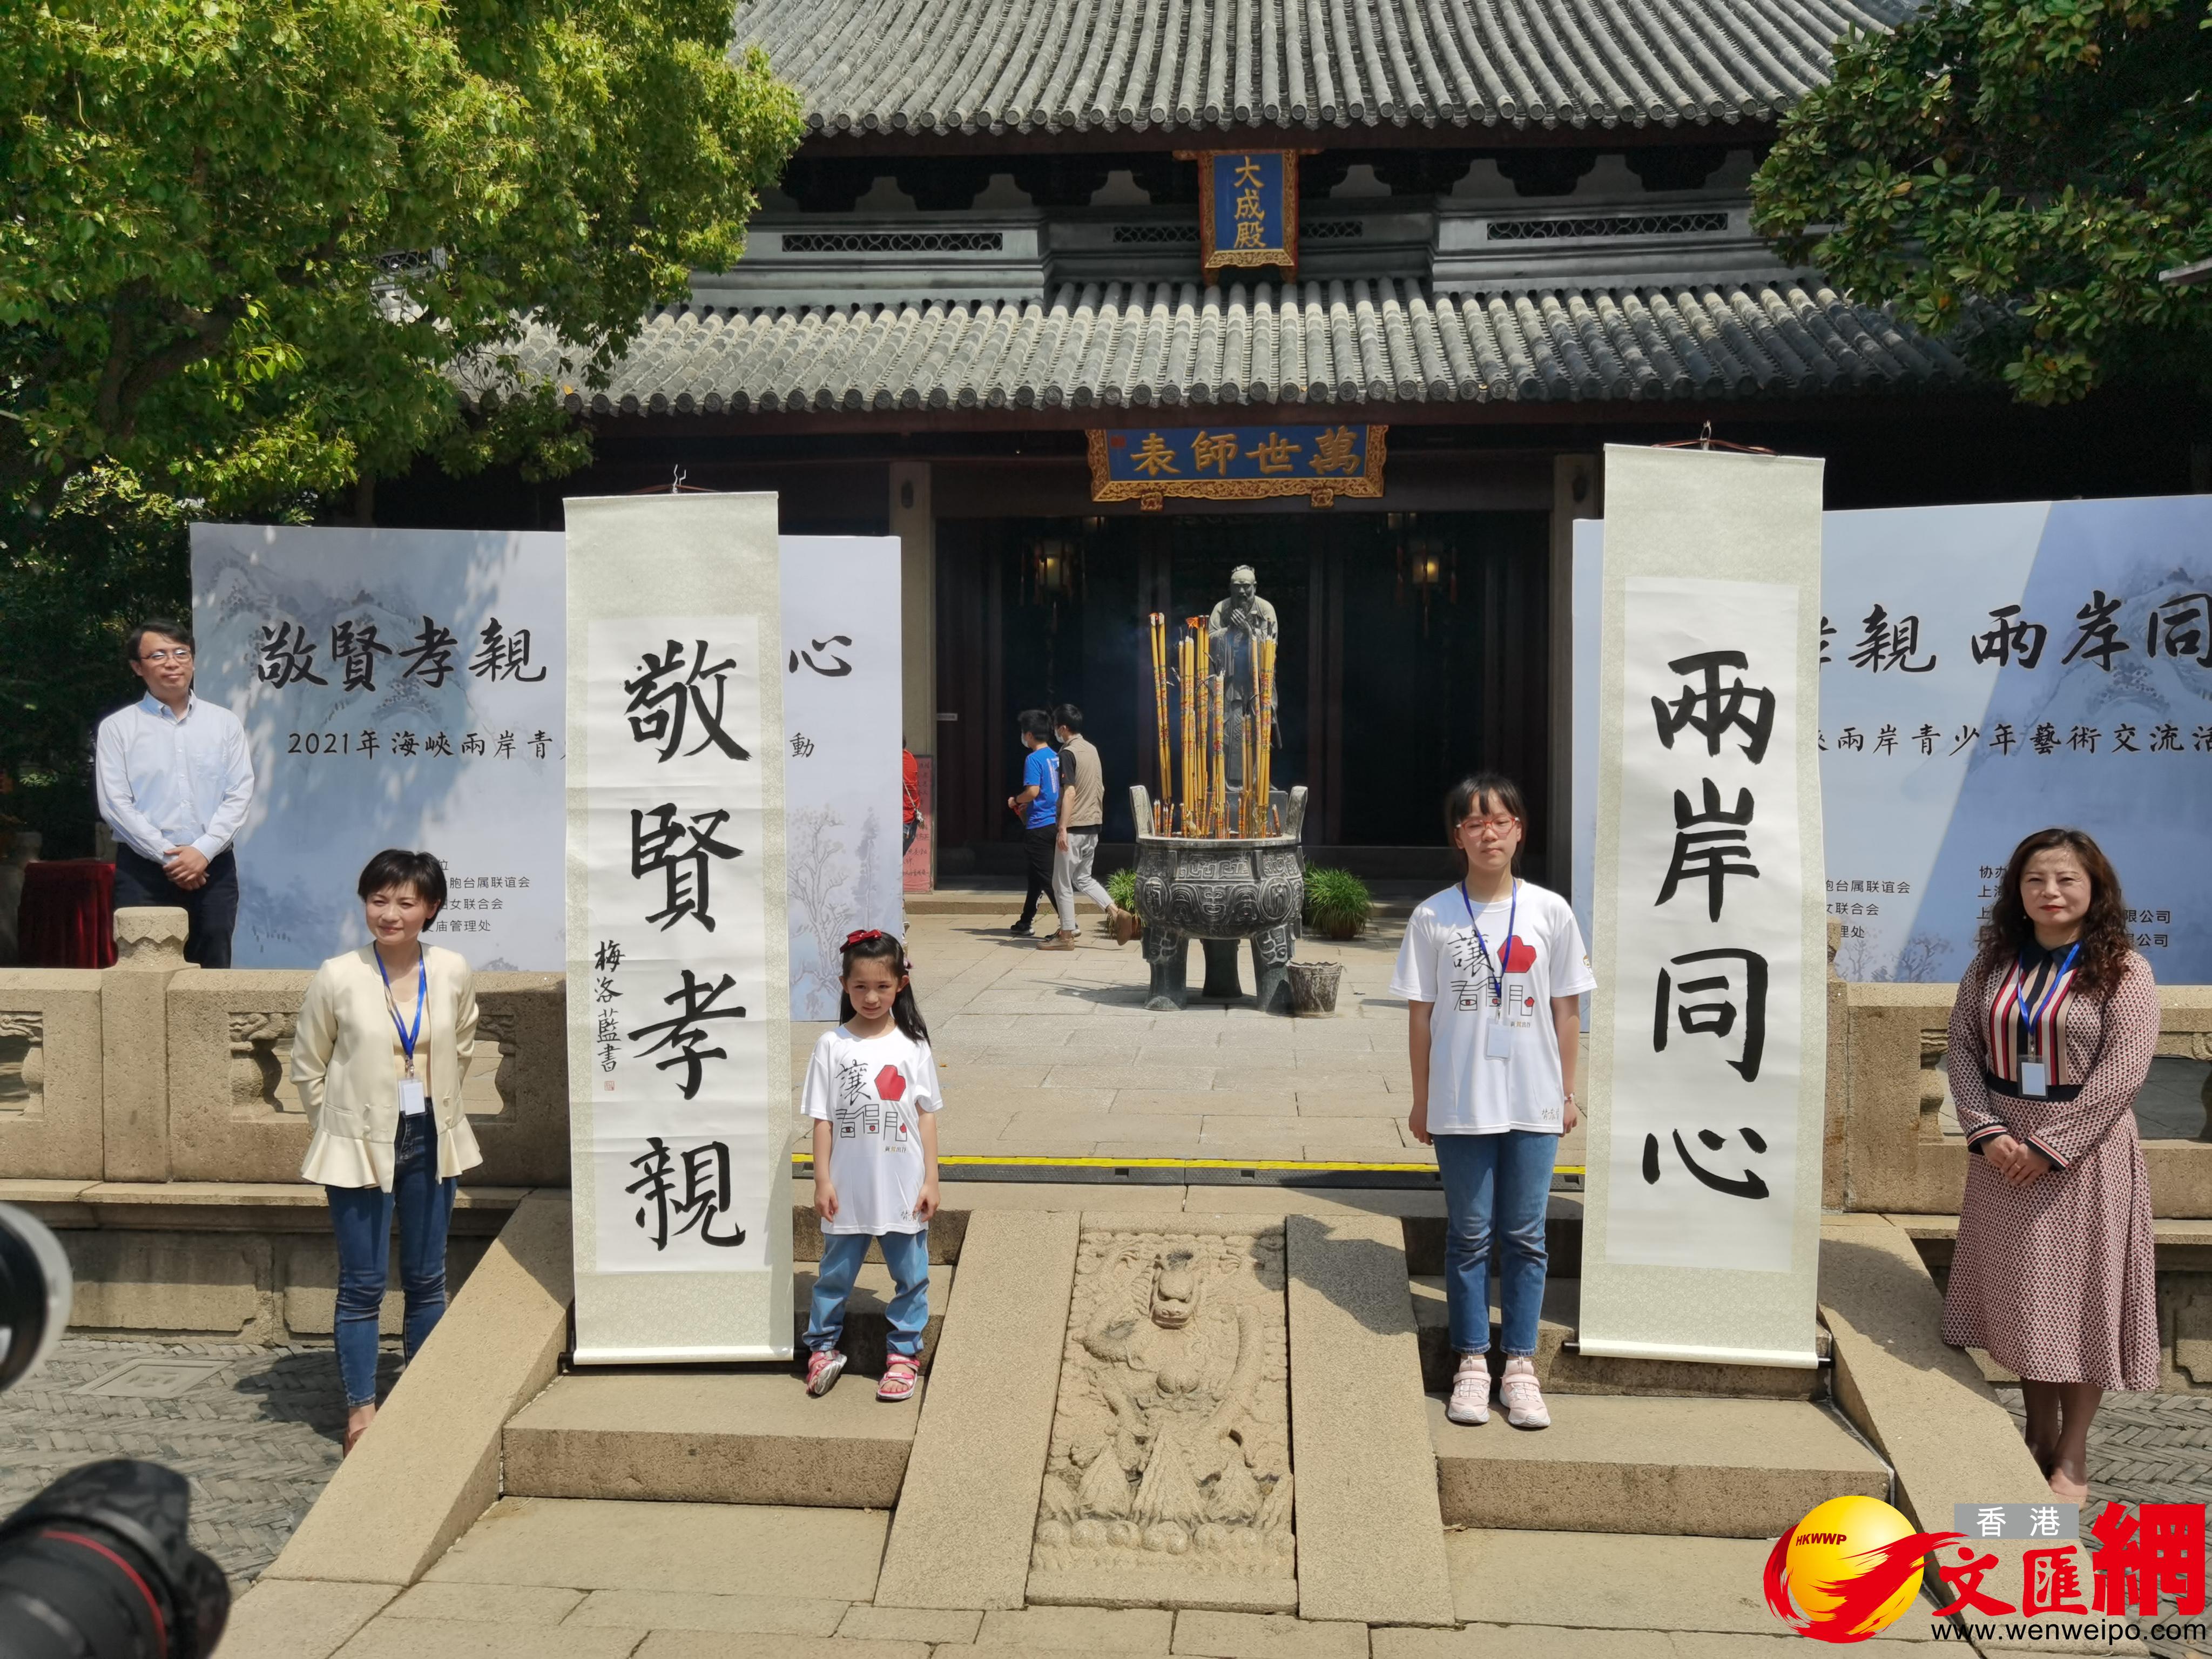 上海民辦永昌學校一年級的學生梅洛藍（左）和就讀於上海市竹園小學五年級的台灣學生韋宗彤，領銜書寫了本次活動主題「敬賢孝親、兩岸同心」。（香港文匯網記者張帆 攝）